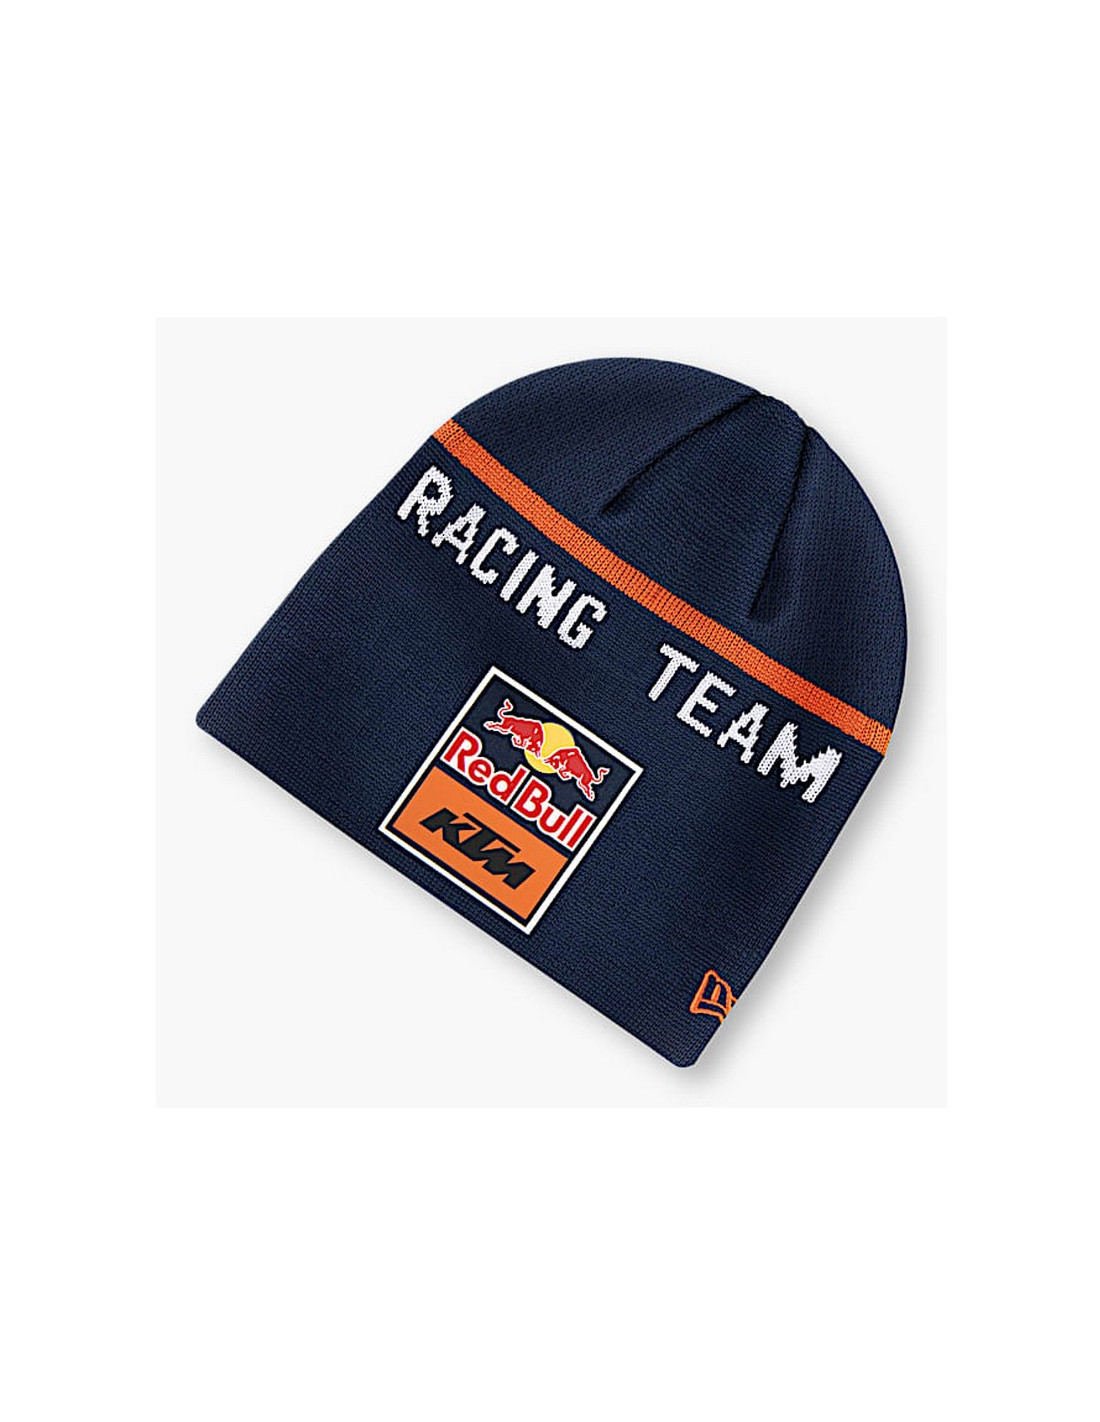 Bonnet KTM Red Bull Teamline New Era